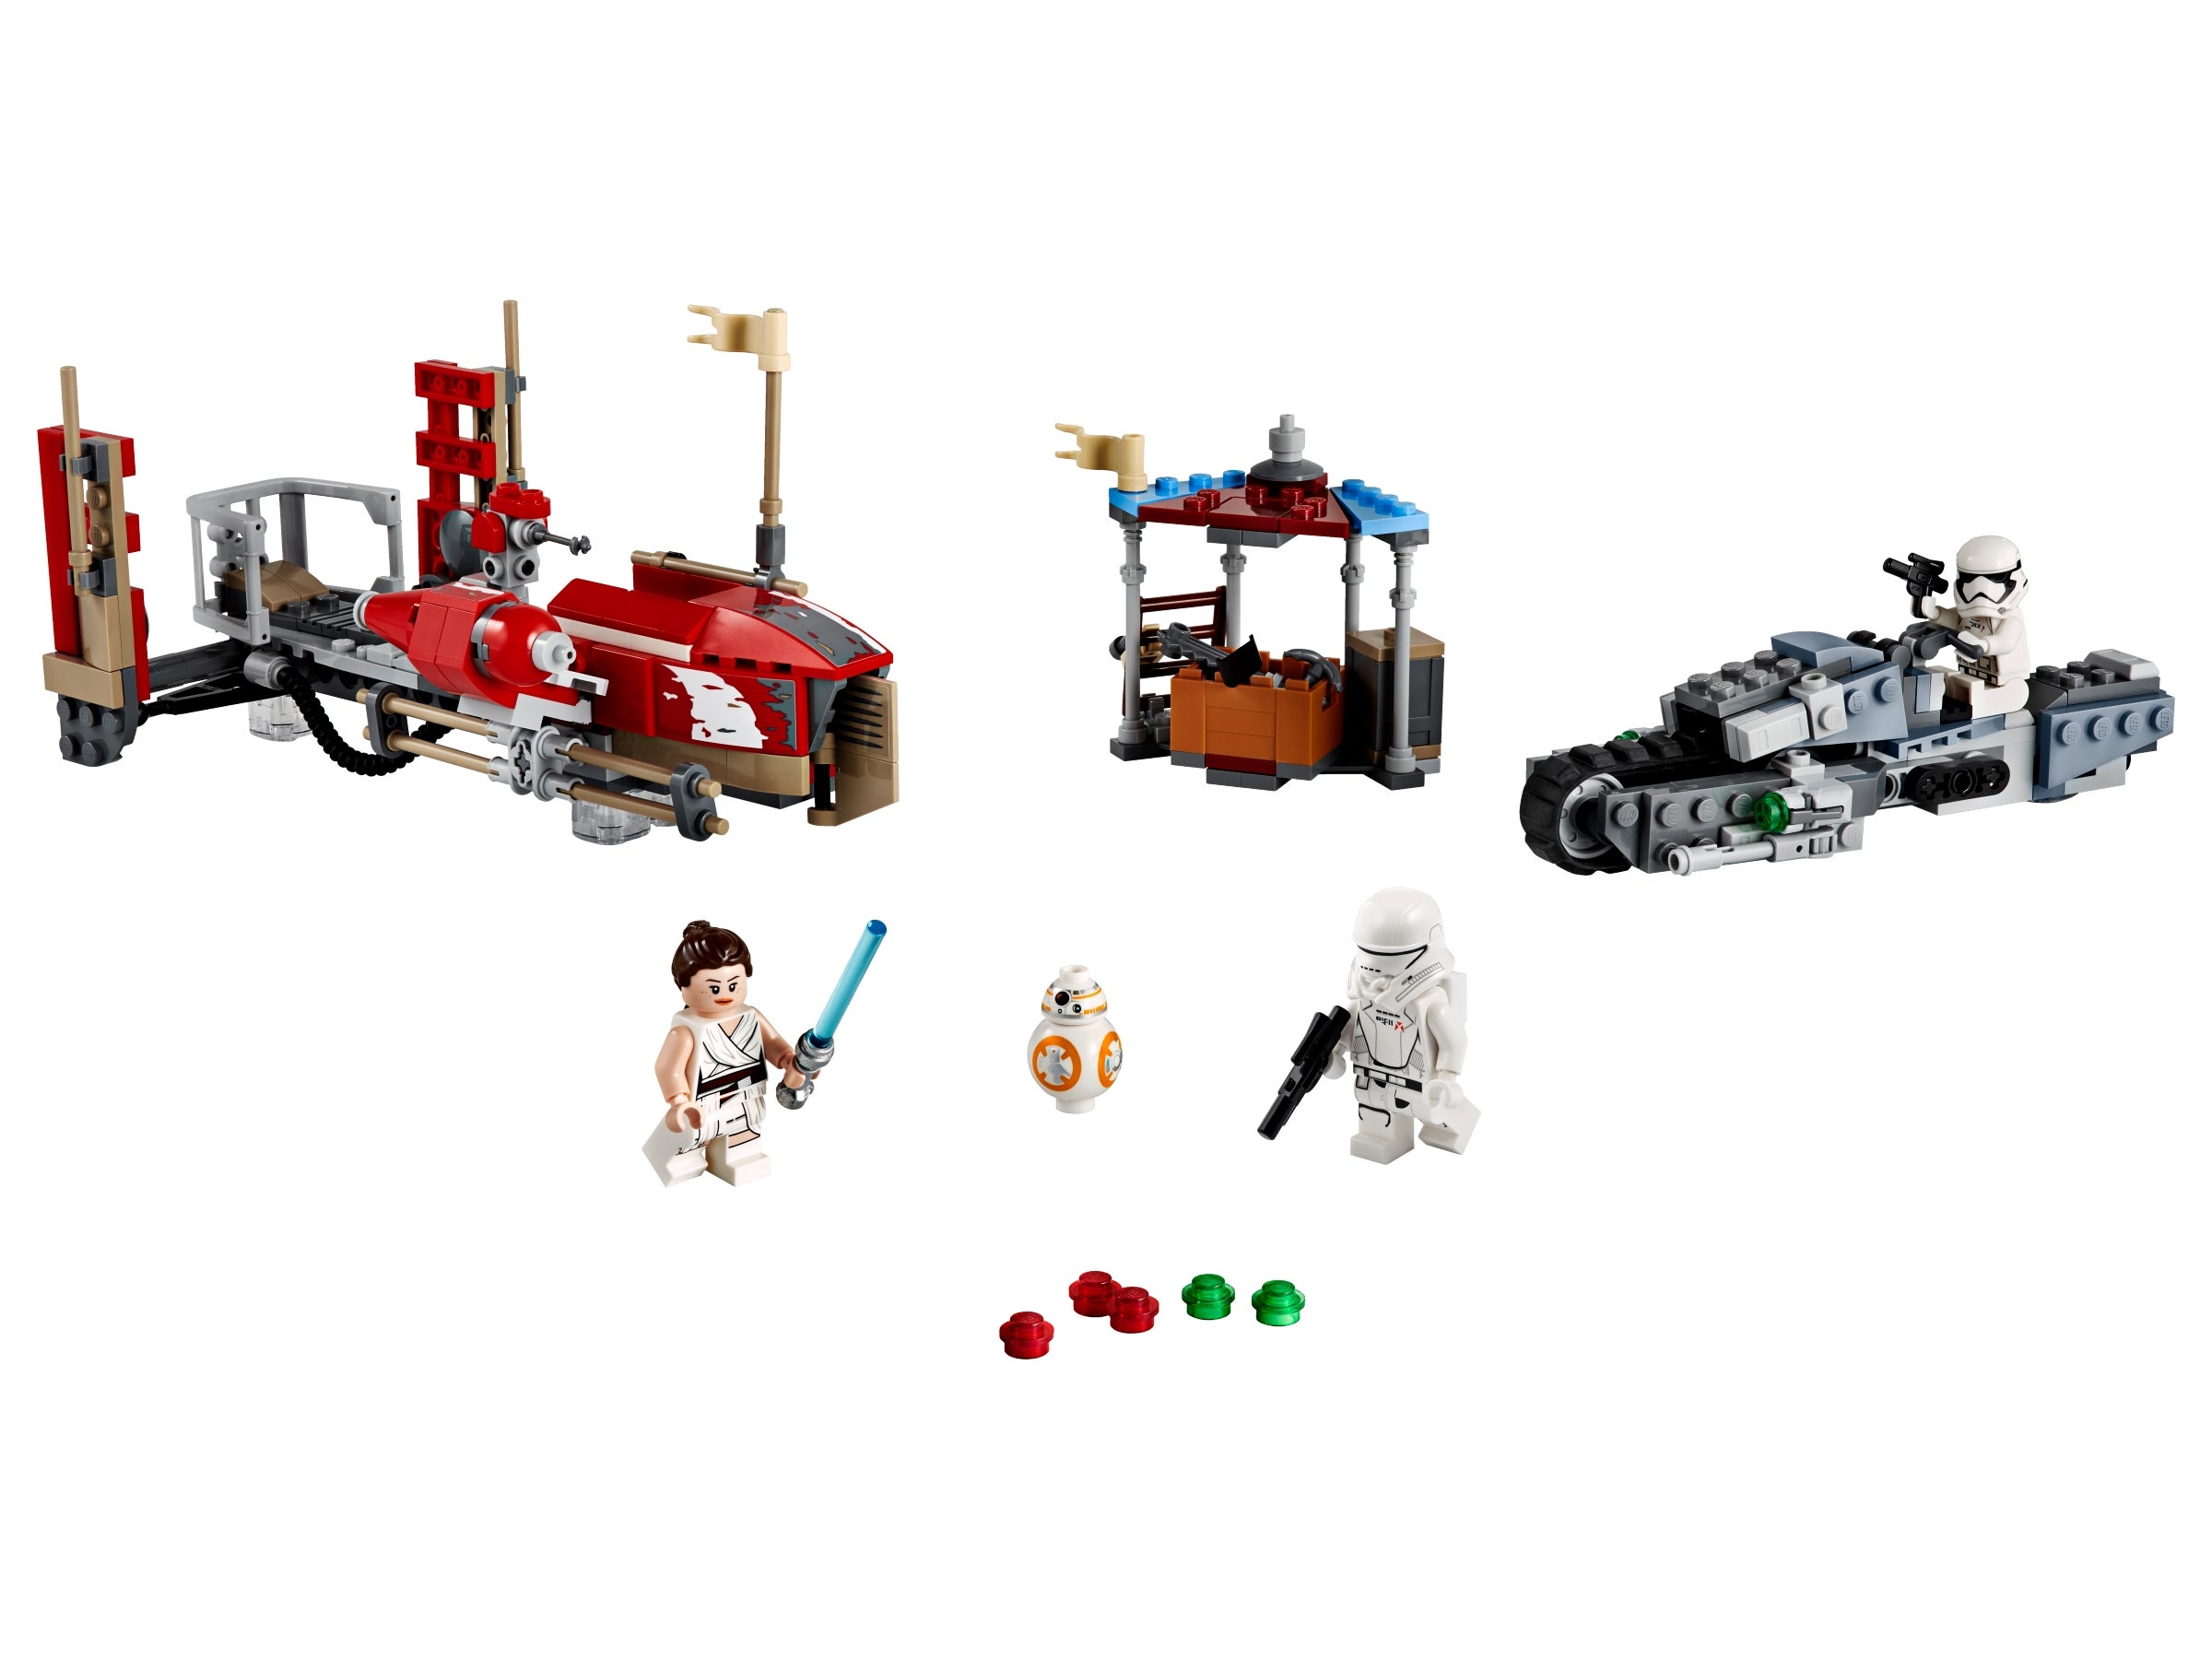 Lego® Star Wars Minifgur Treadspeeder Driver aus Set 75250 Neu